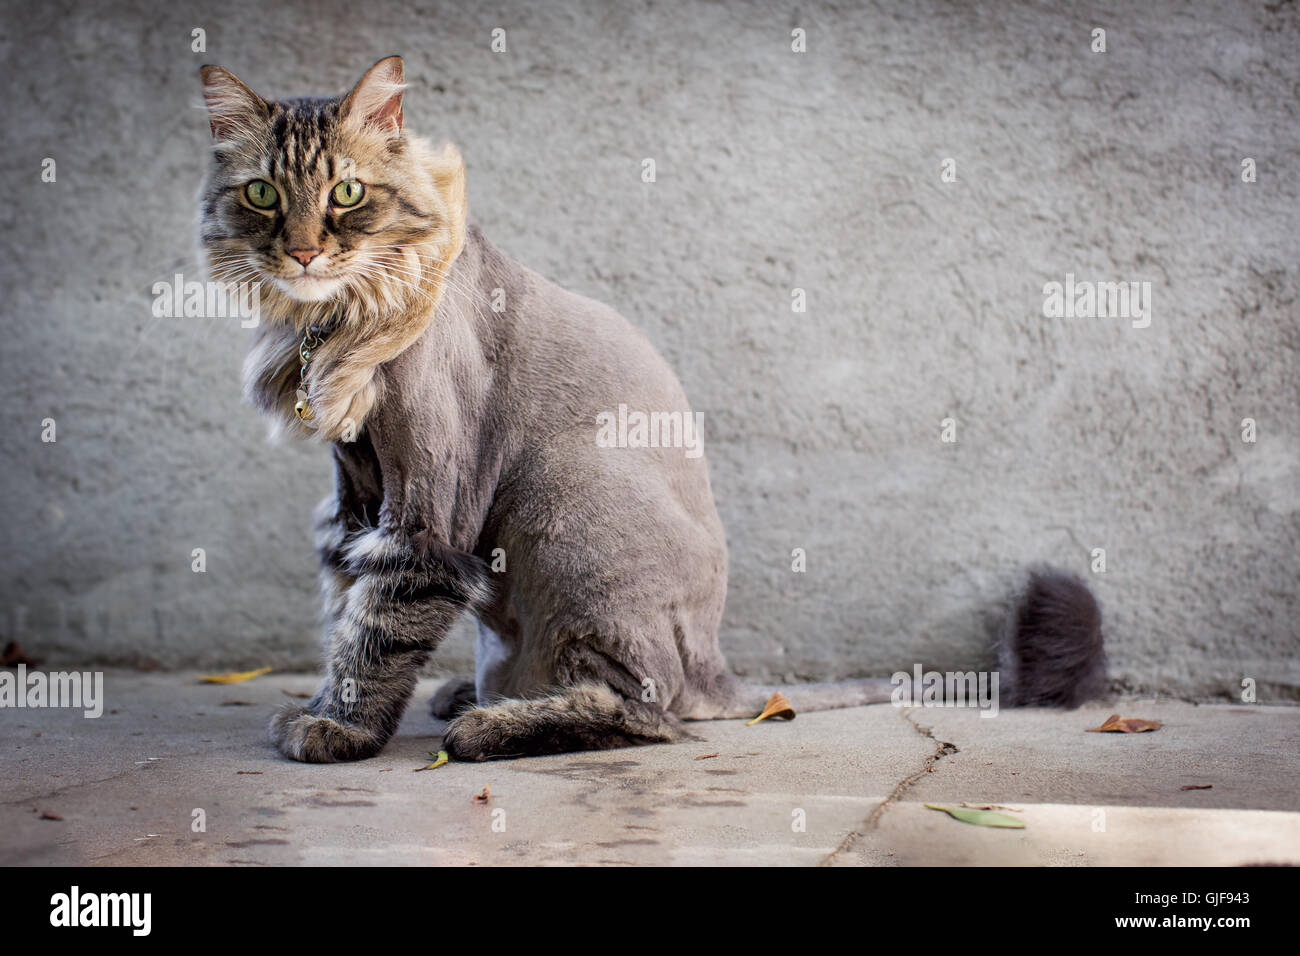 Longhair tabby cat with fresh lion cut Stock Photo 114662467 Alamy